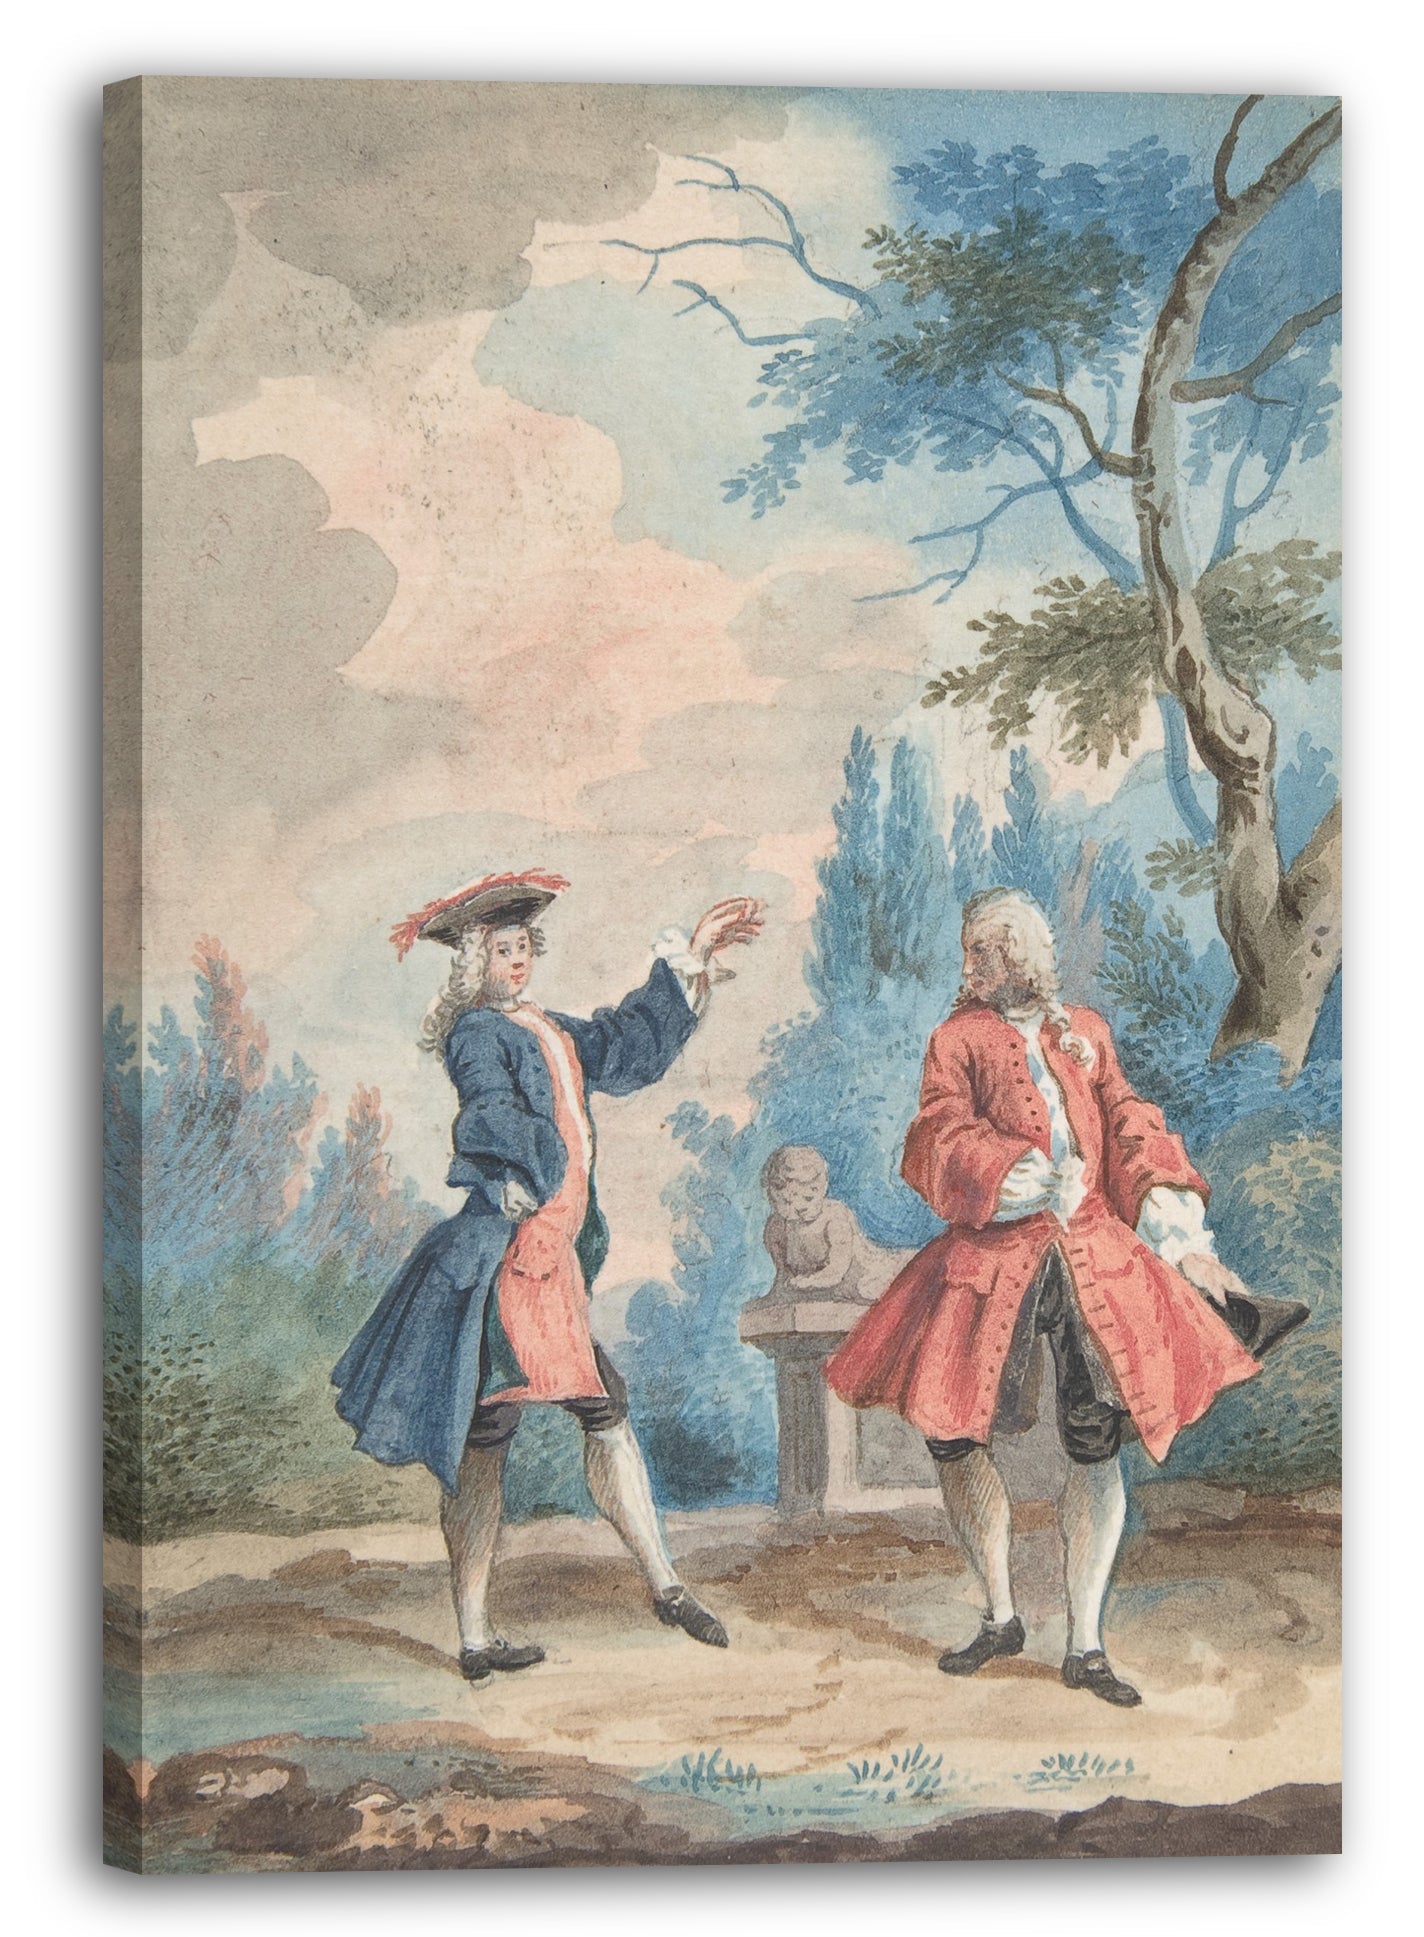 Leinwandbild Anonym, Französisch, 18. Jahrhundert - Zwei tanzende männliche Personen in einer Landschaft